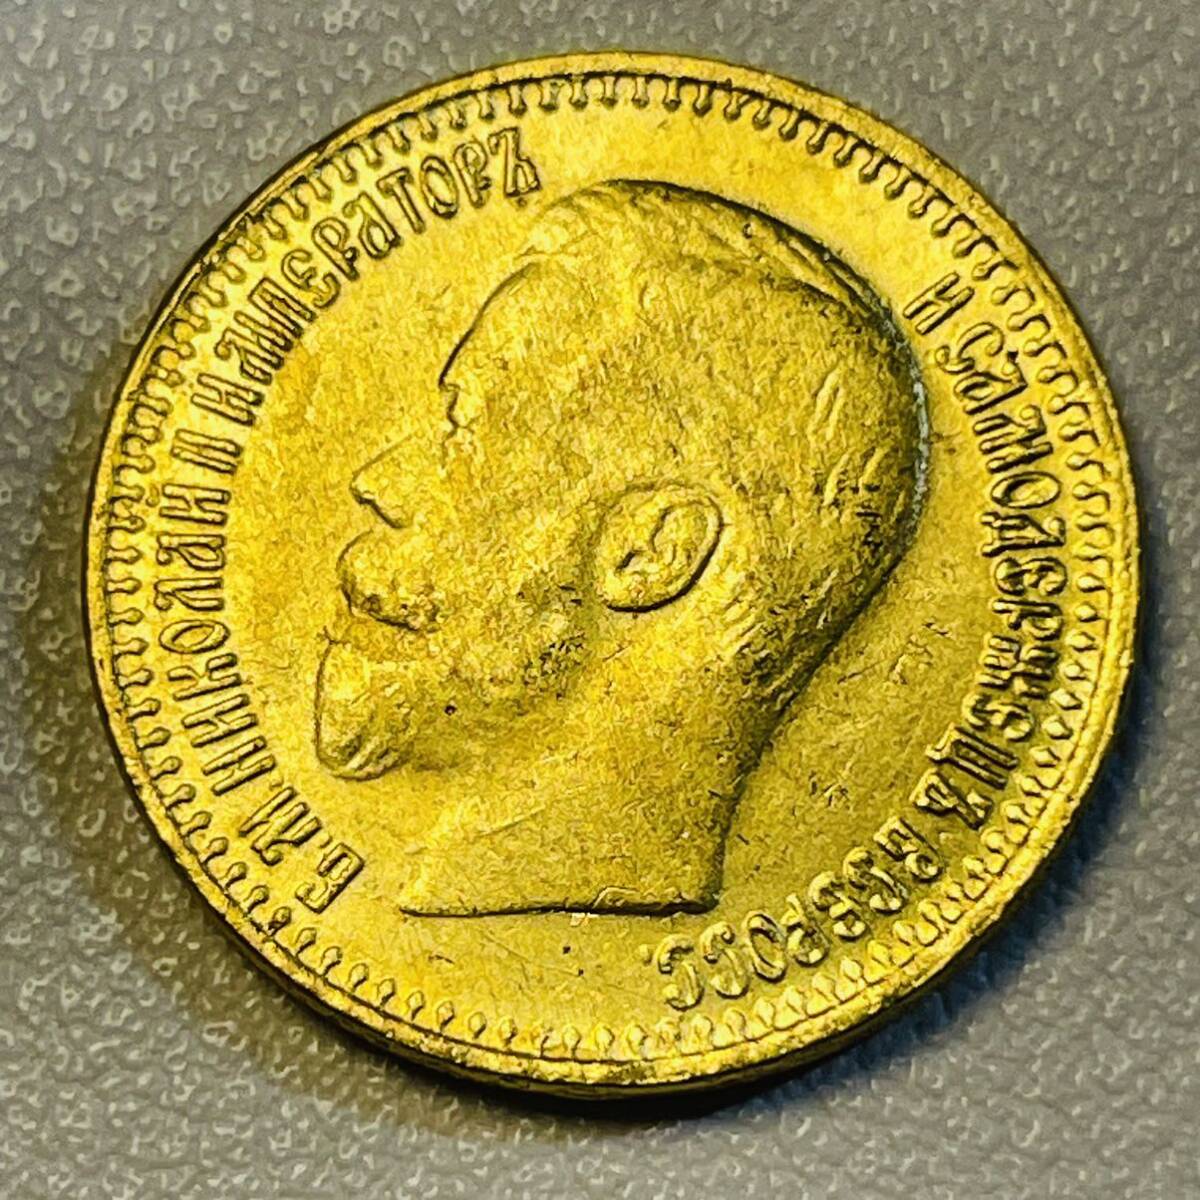 ロシア帝国 硬貨 古銭 ニコライ2世 1897年 双頭の鷲 国章 クラウン 7ループル 50カペイカ コイン 重5.63g_画像2